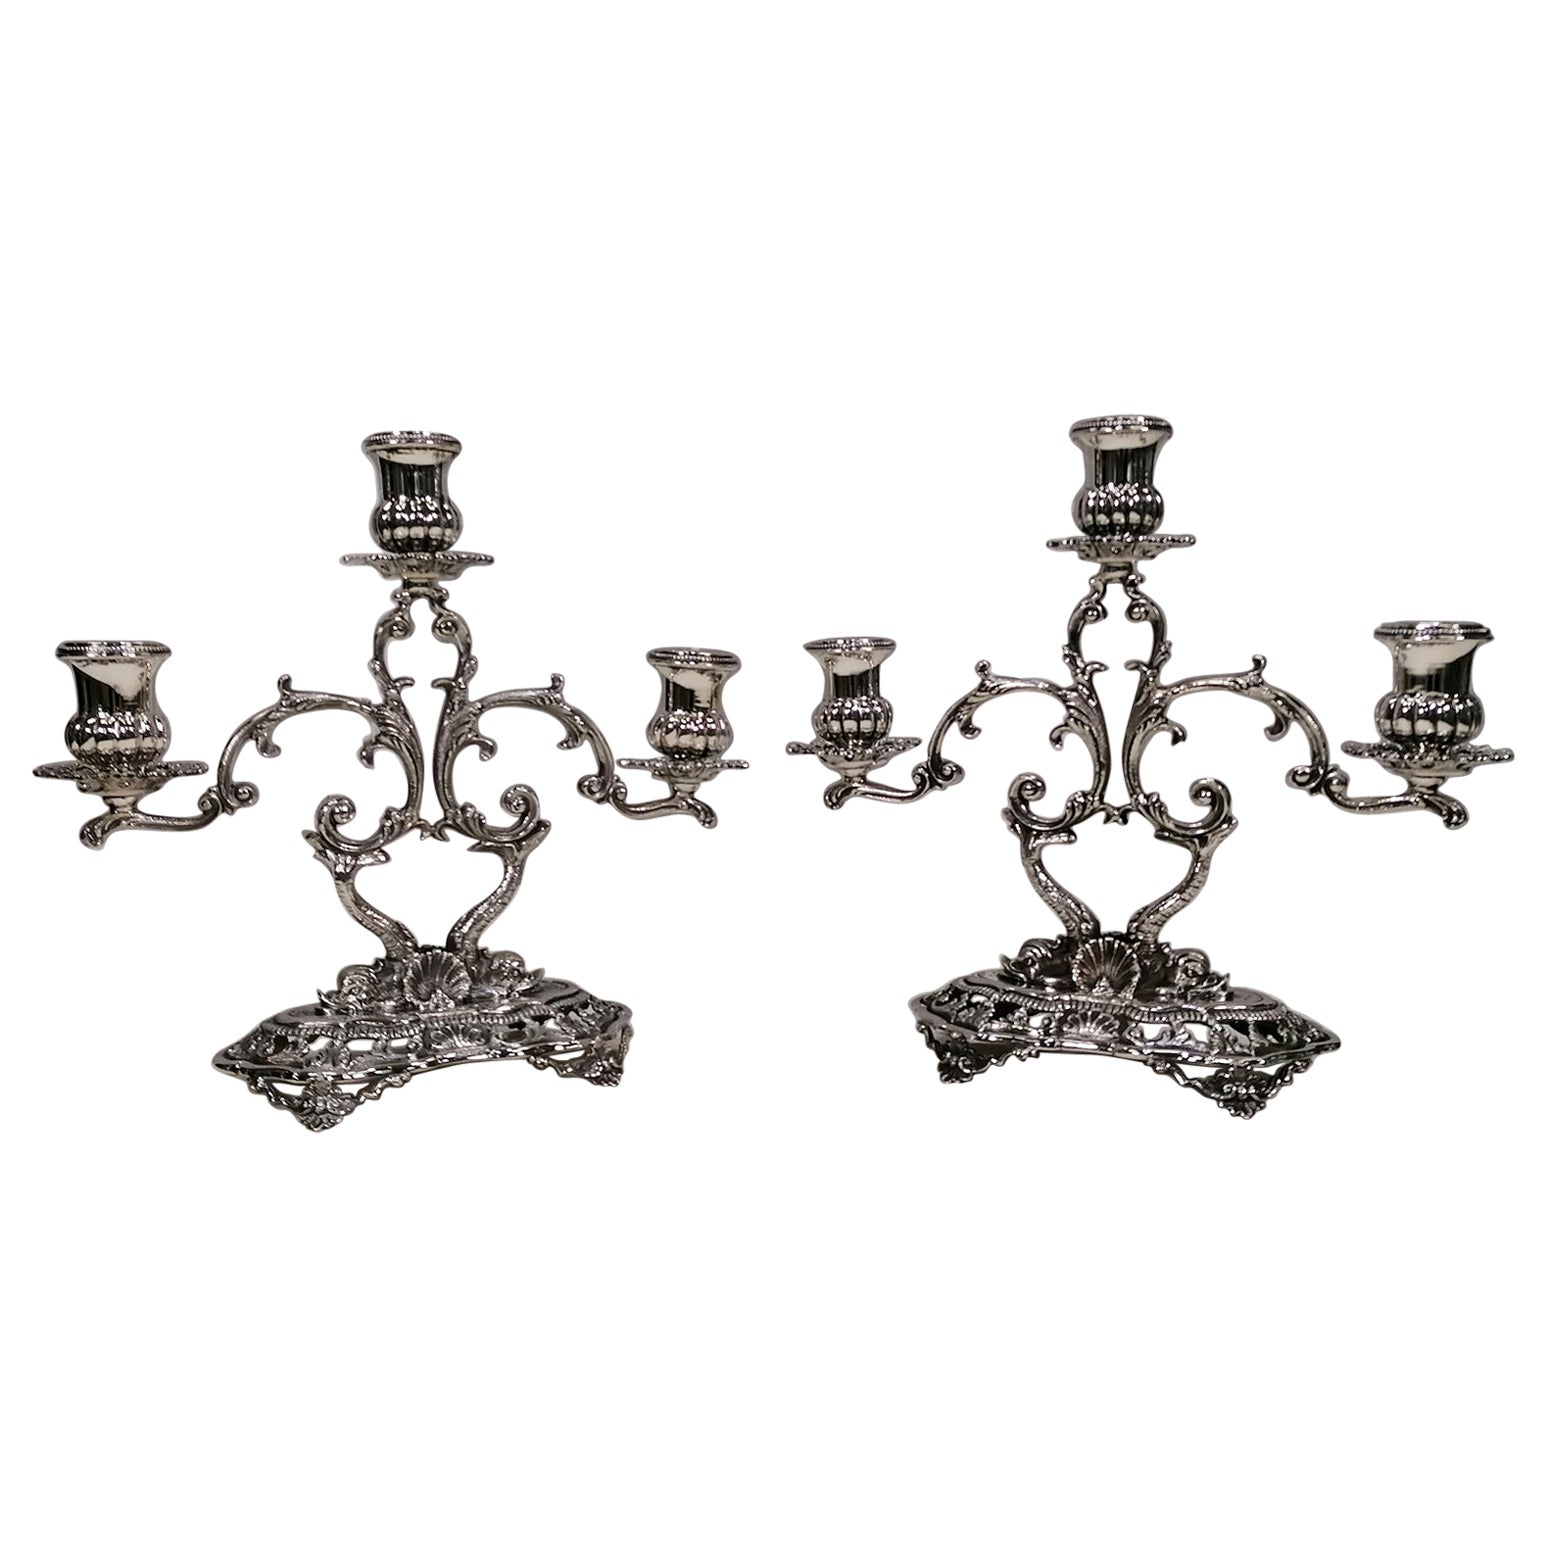 Paire de candélabres à 3 lumières de style baroque.
Les chandeliers ont été fabriqués selon la technique du moulage, de la gravure et du ciselage entièrement à la main.
La base de forme oblongue repose sur 4 pieds et est façonnée et perforée de